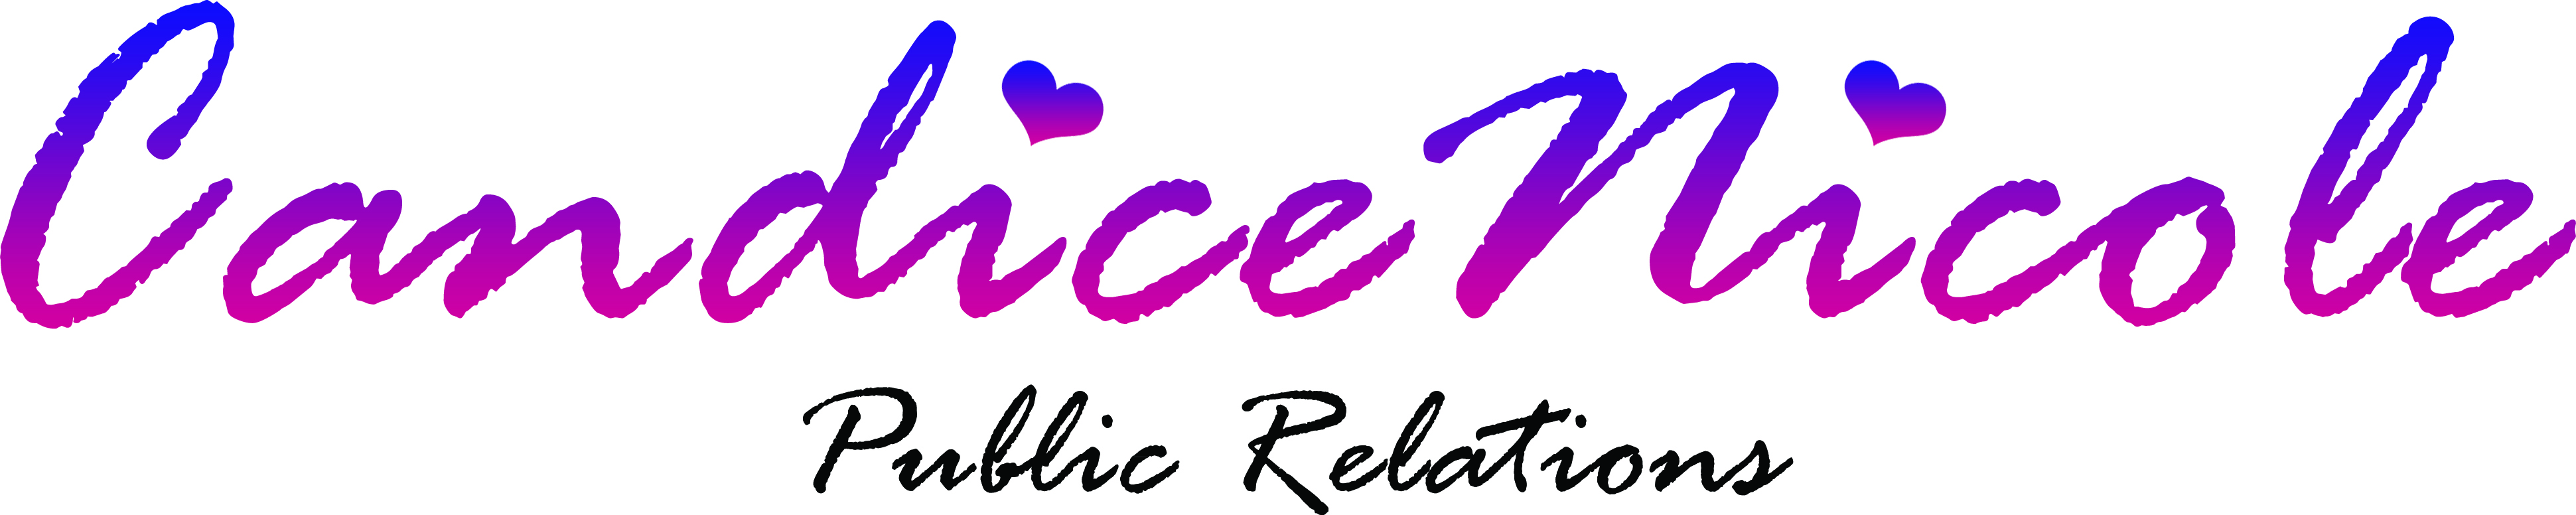 Visit Candice Nicole Public Relations Botique Online!